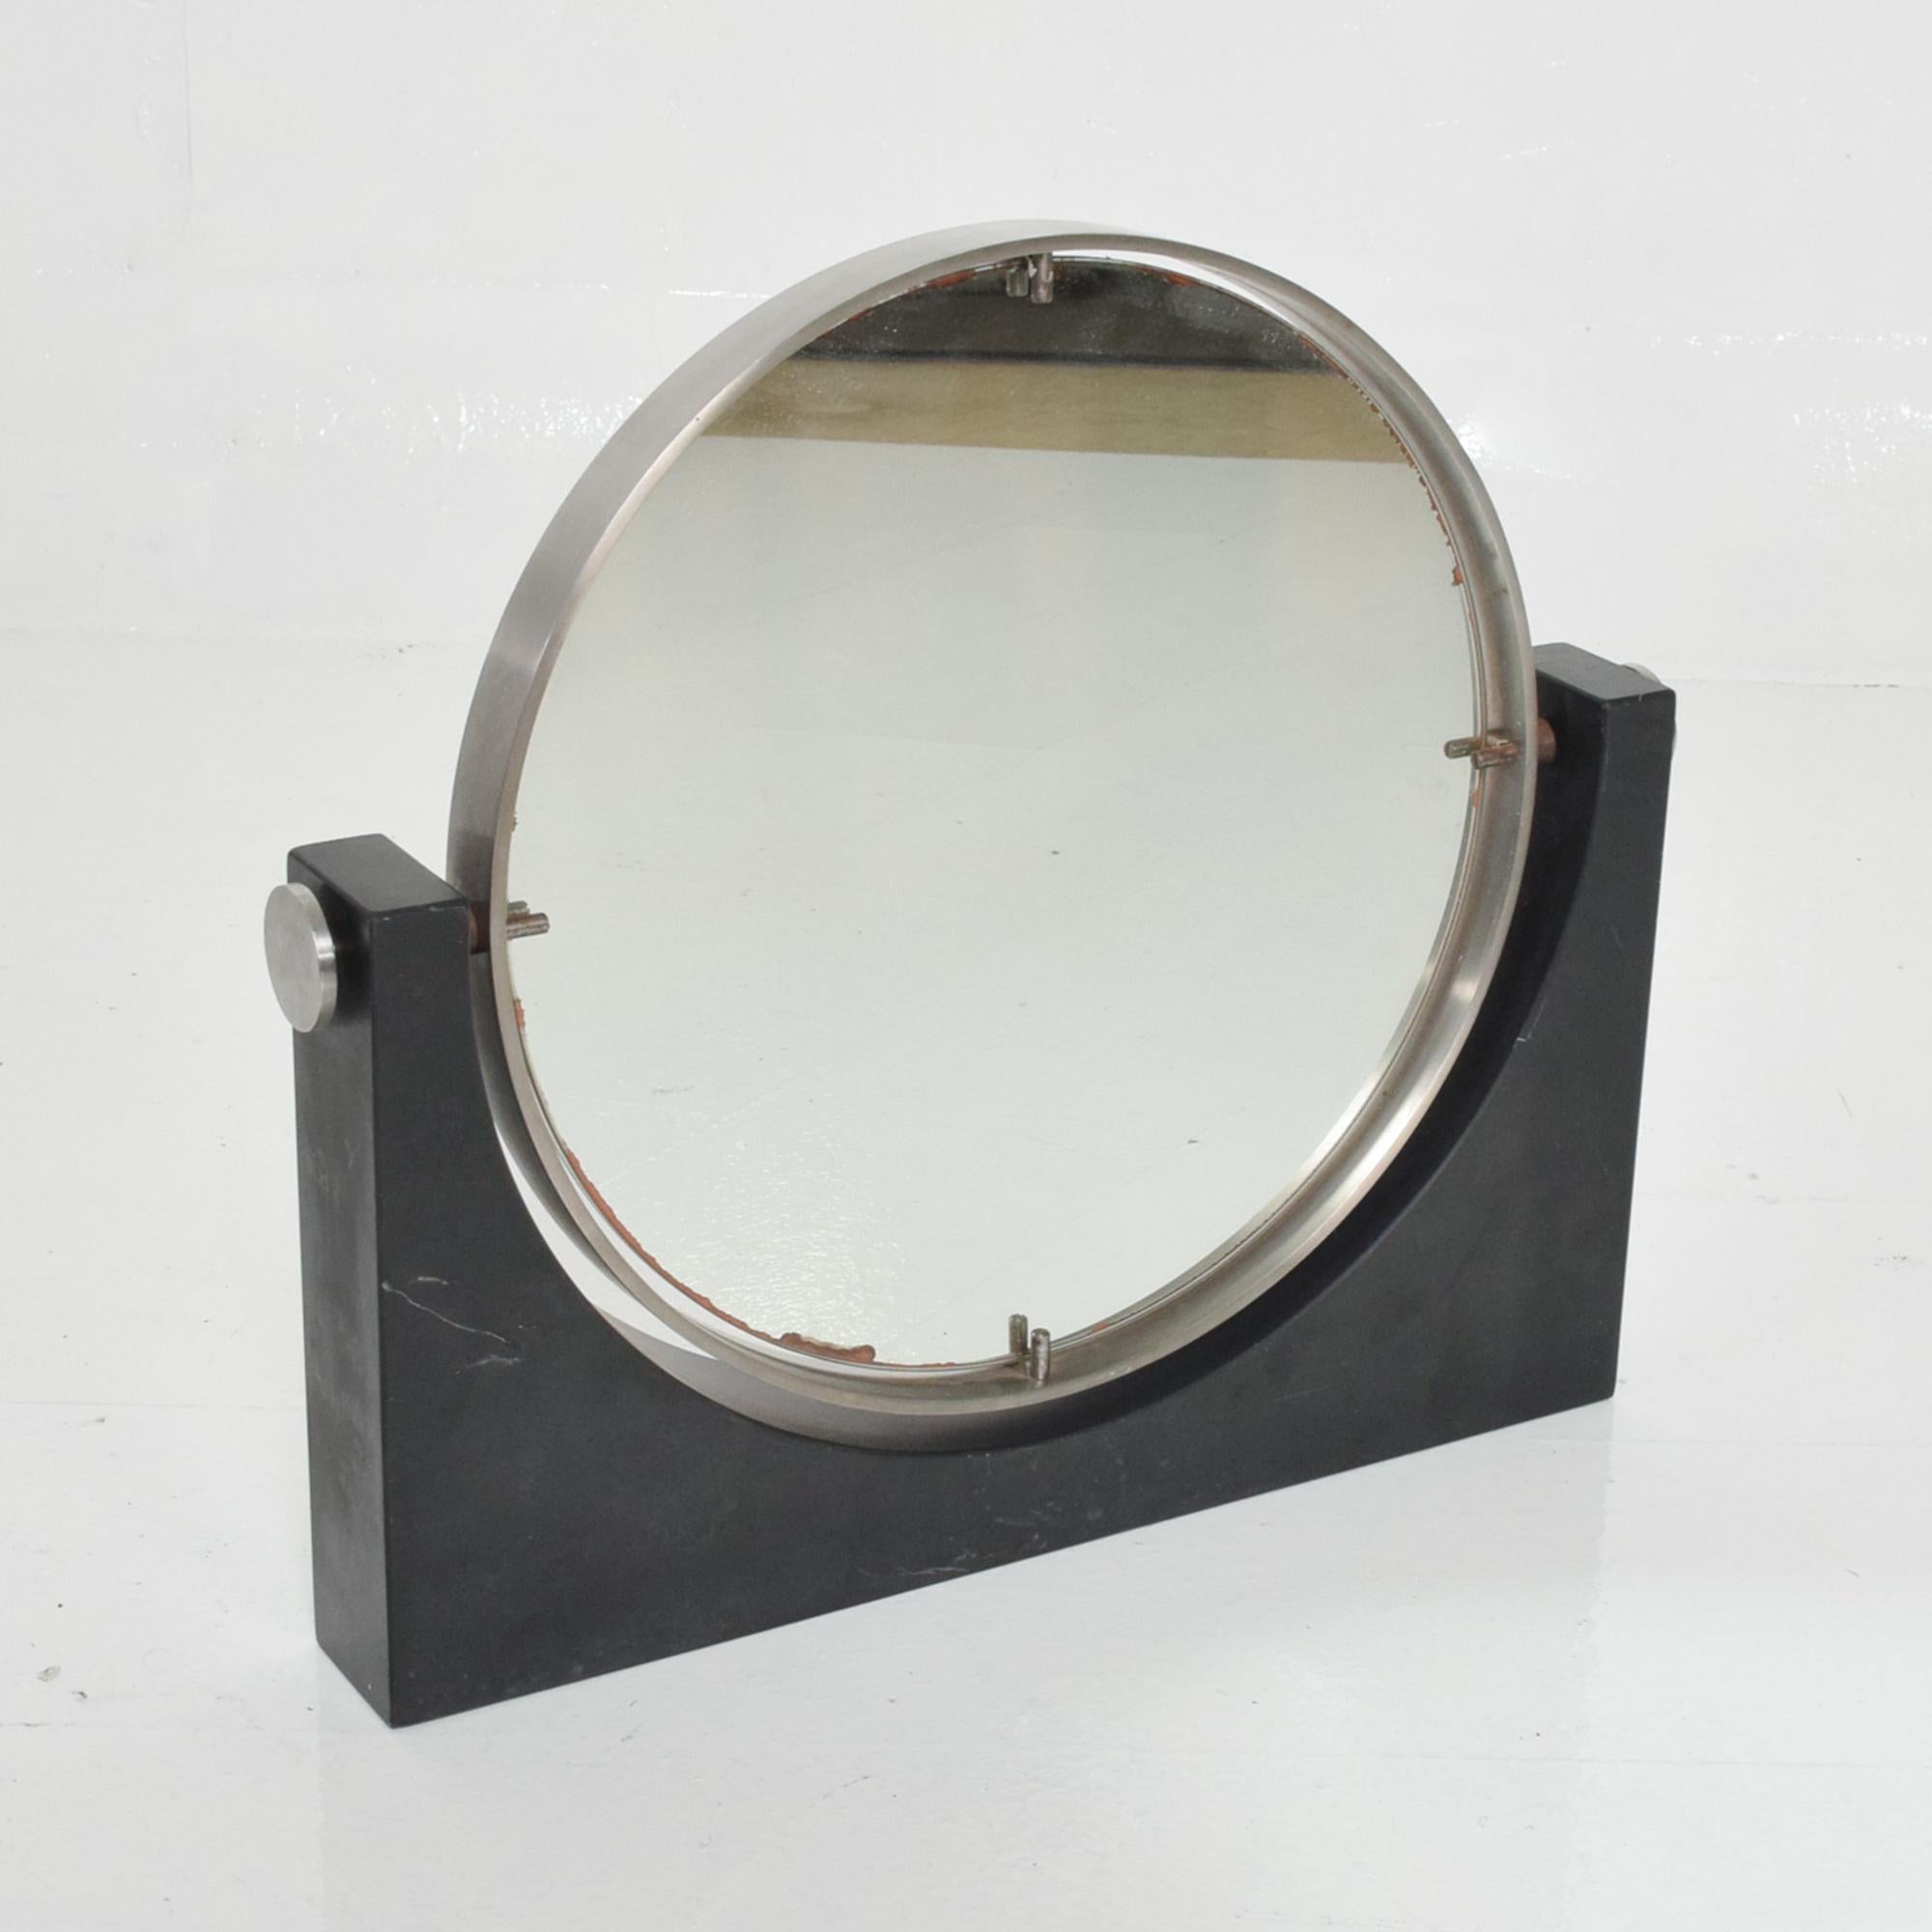 Angelo Mangiarotti Italian Modern Tabletop Vanity Makeup Mirror (miroir de maquillage de table)
Marbre noir de Carrare et acier inoxydable.
Fabriqué en Italie dans les années 1970.
Non marqué.
Miroir pivotant double face.
16 H x 18 L x 2,25 P,